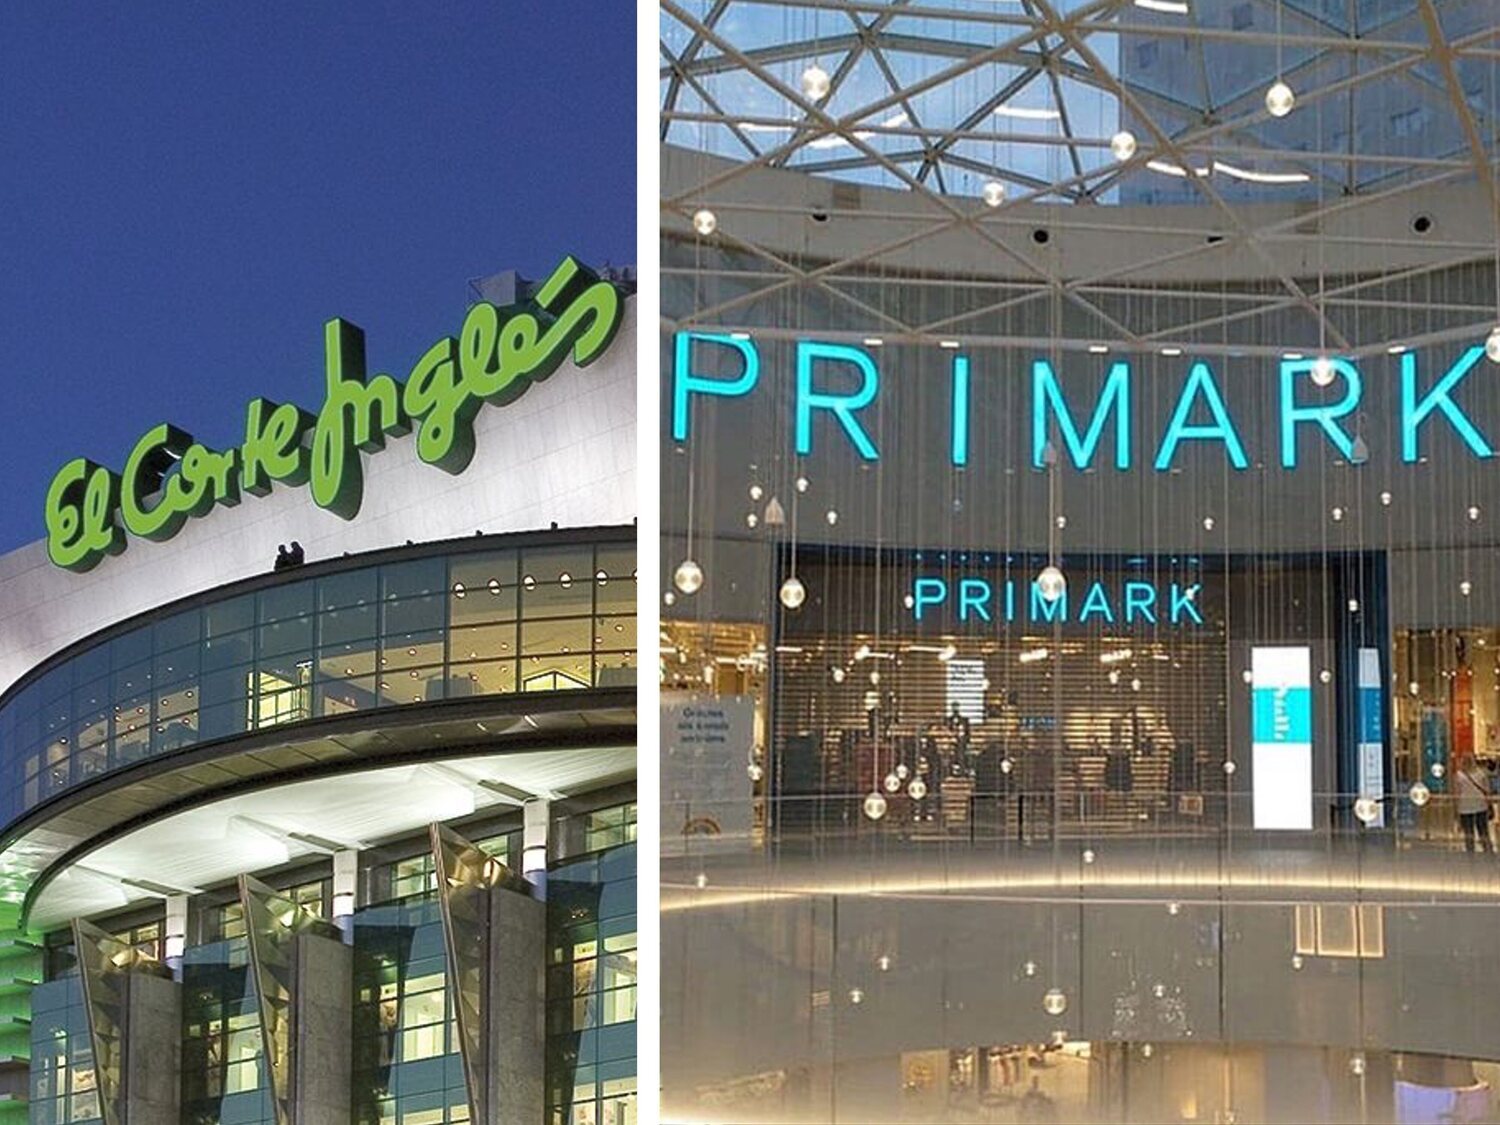 El Corte Inglés se lanza a competir con Primark en ropa low cost: así reforma este conocido centro comercial